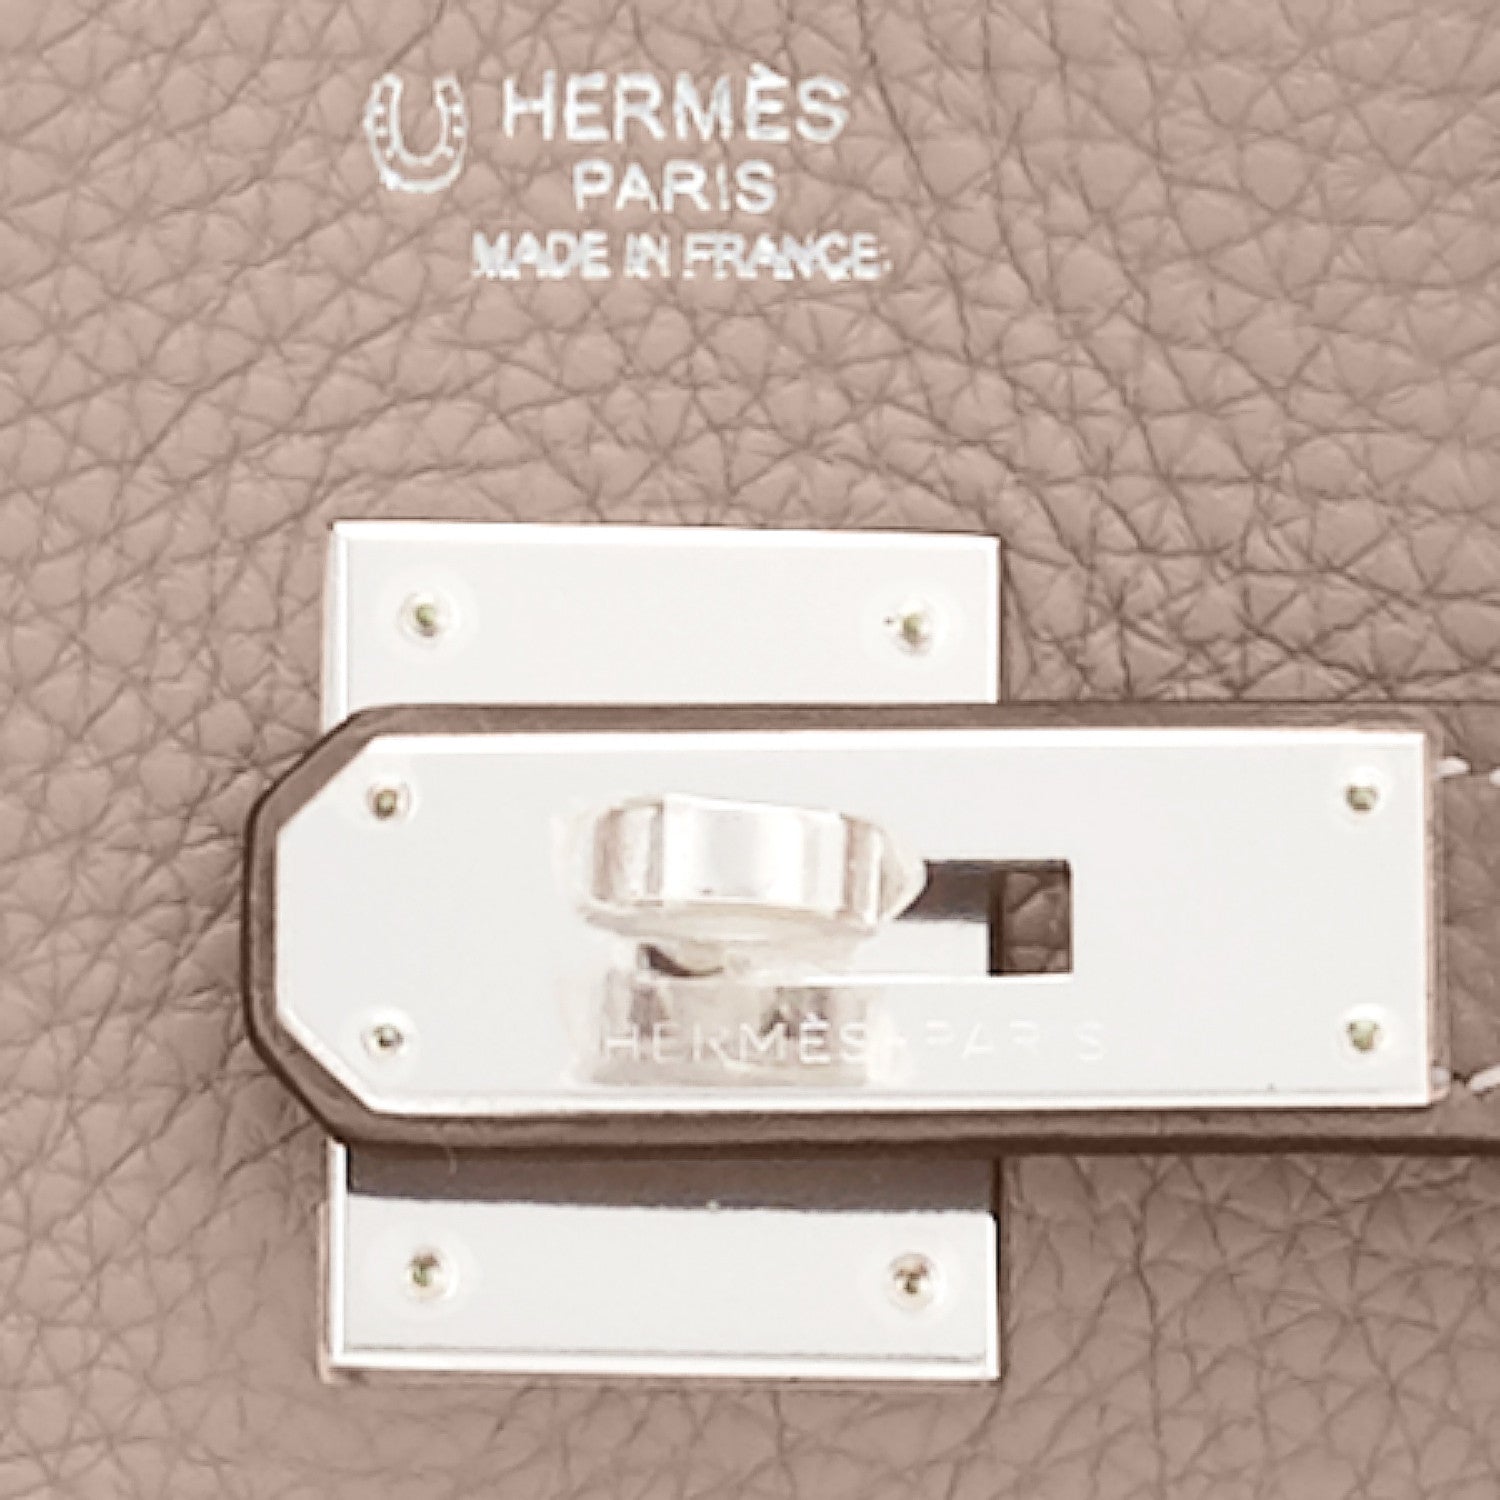 Hermes Birkin 30 Biscuit Togo Leather Palladium Hardware